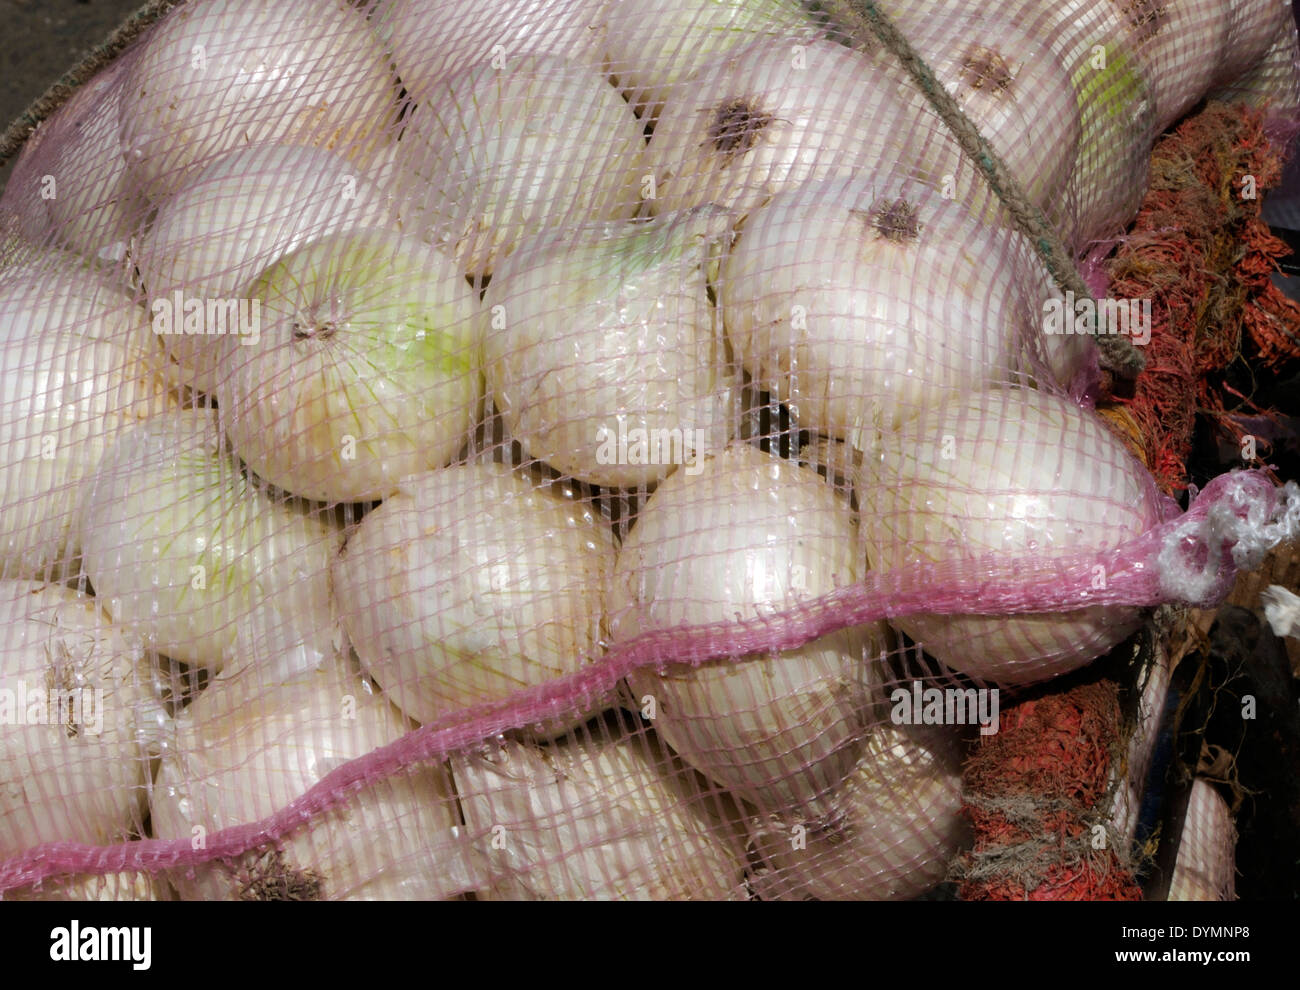 Onions for sale in the vegetable market in Almolonga. San Pedro de Almolonga, Republic of Guatemala. Stock Photo